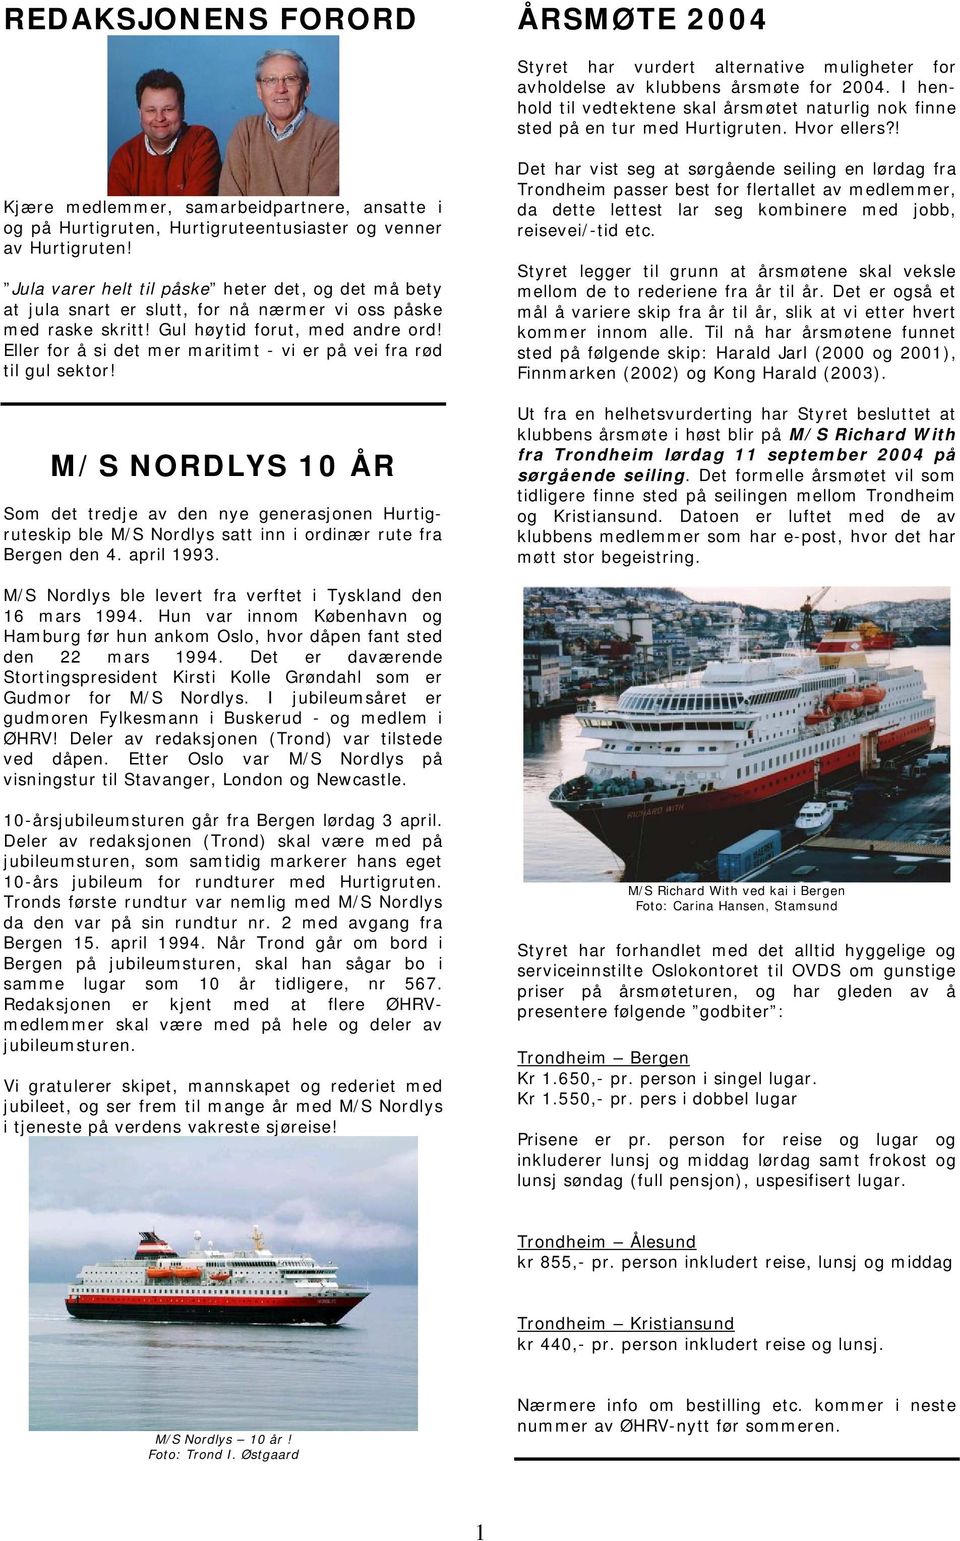 ! Kjære medlemmer, samarbeidpartnere, ansatte i og på Hurtigruten, Hurtigruteentusiaster og venner av Hurtigruten!